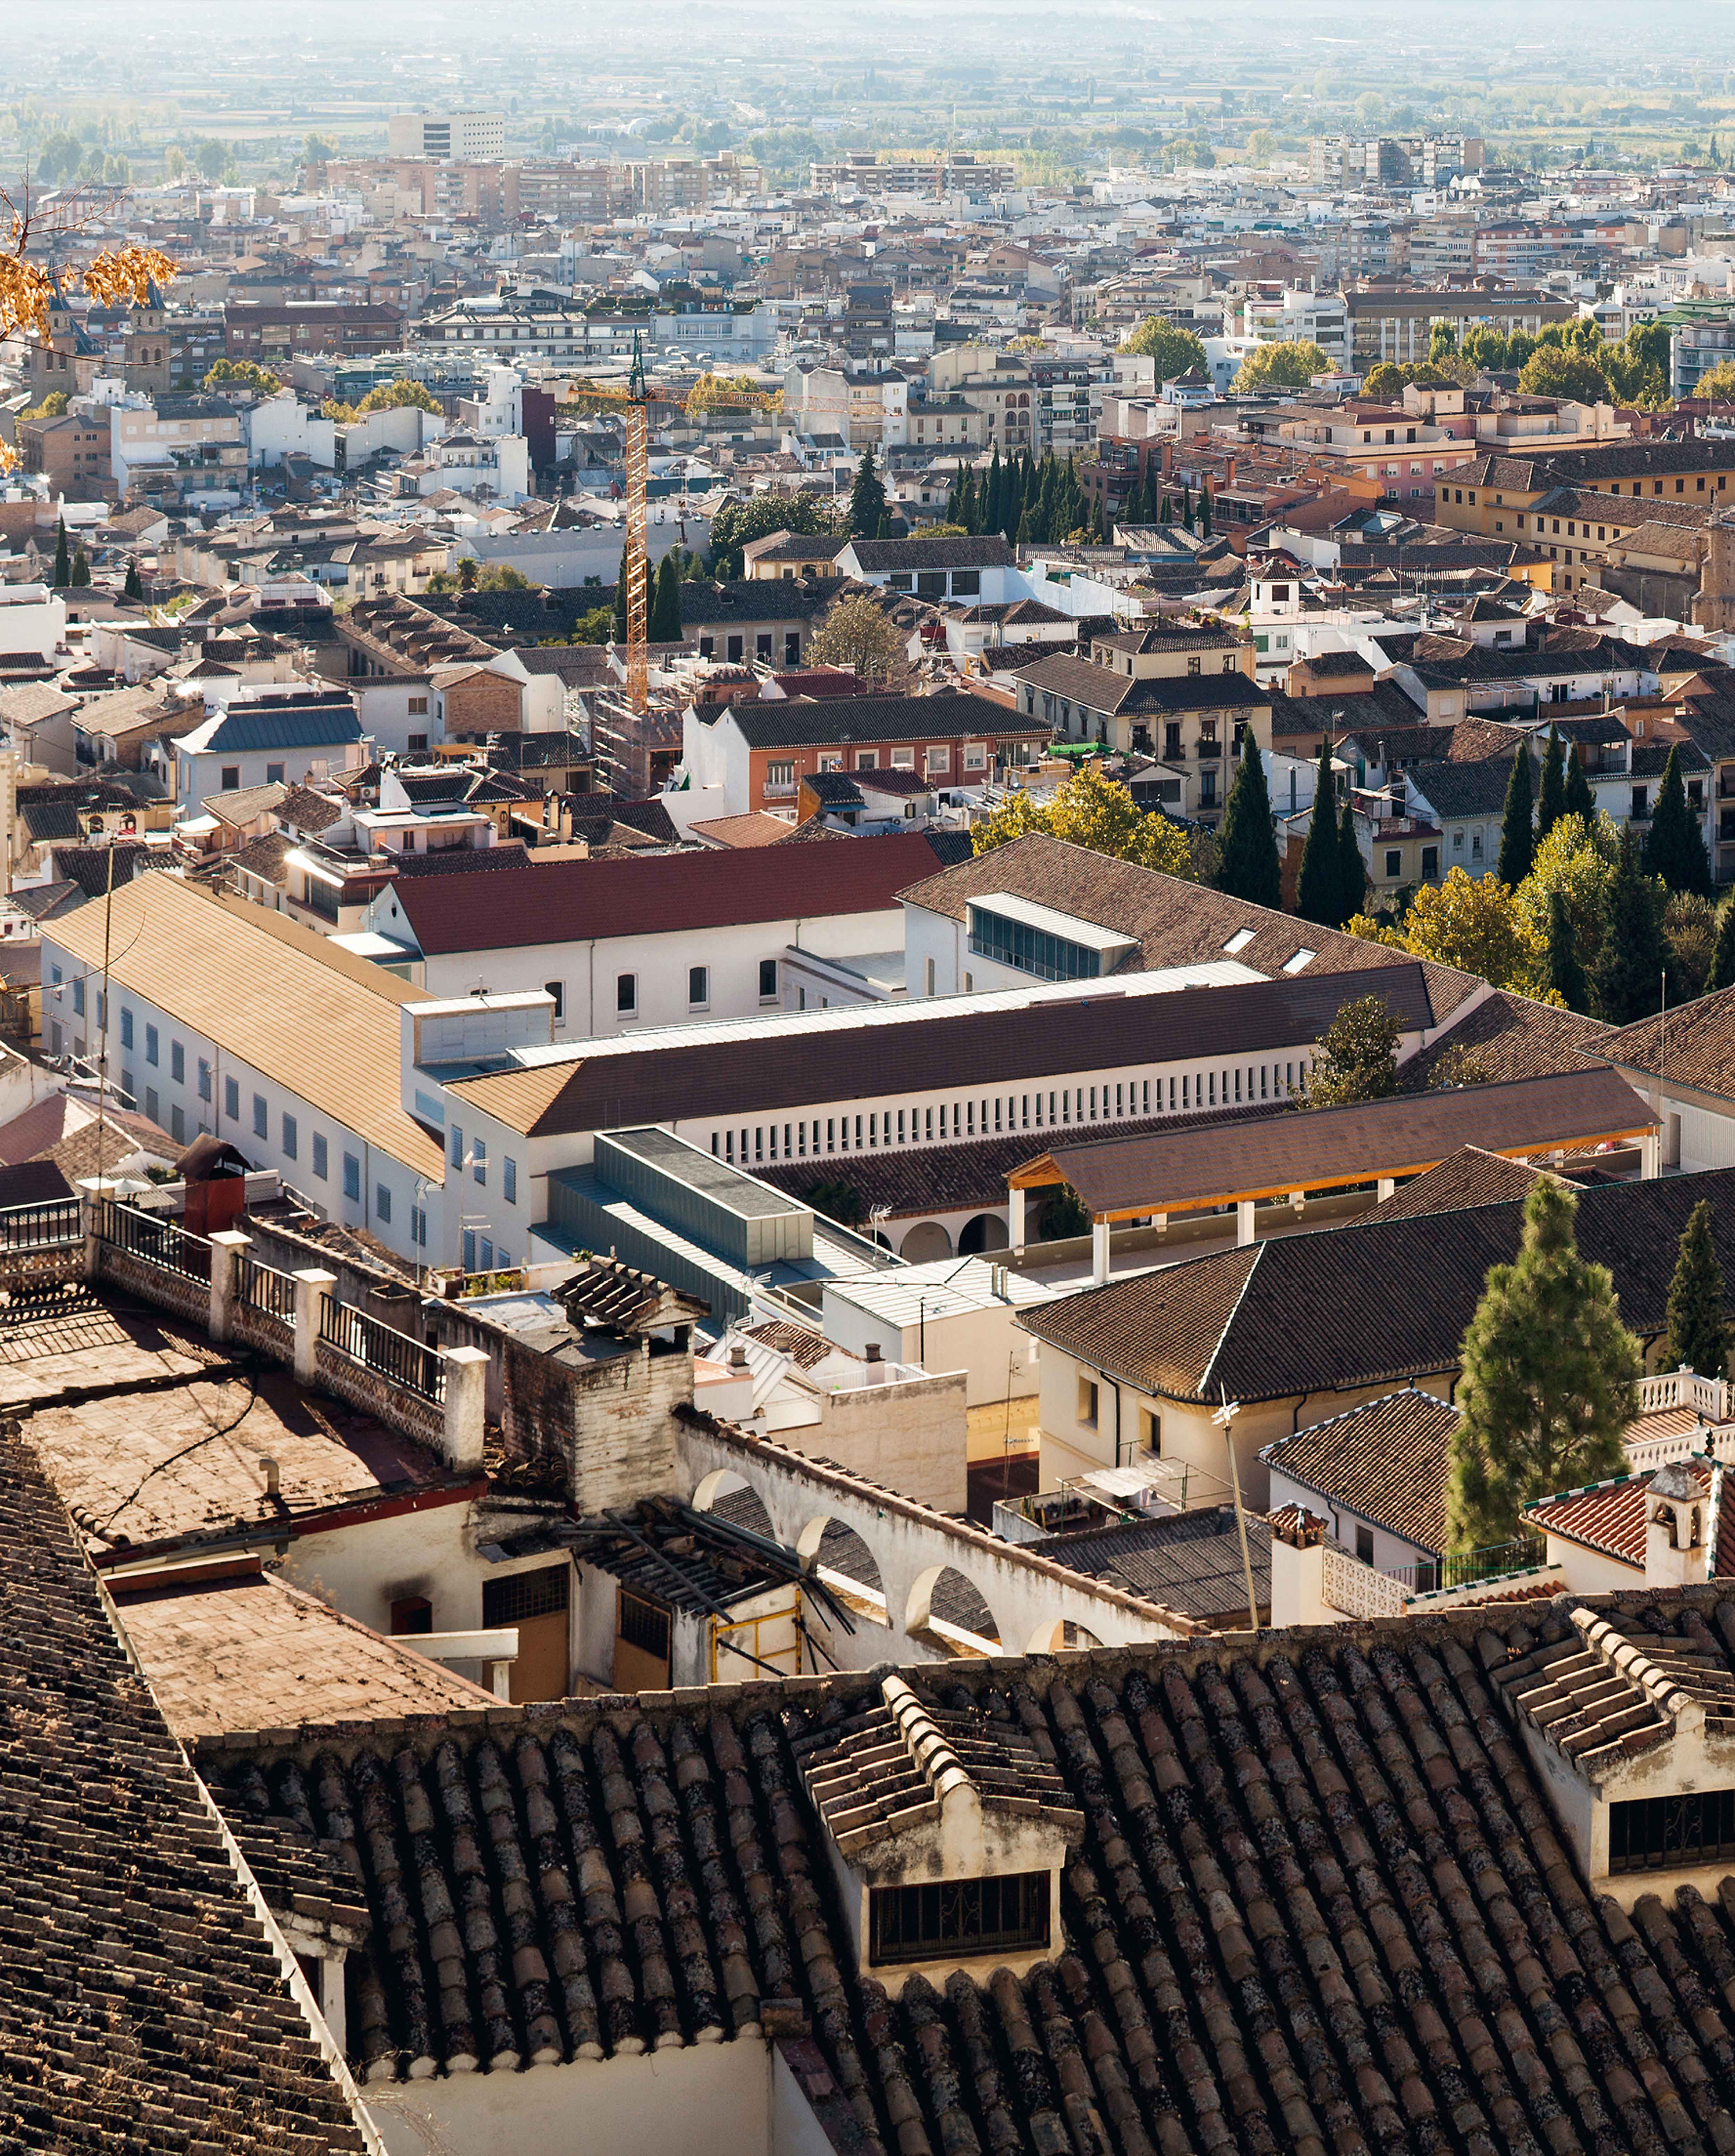 School of Architecture in Granada